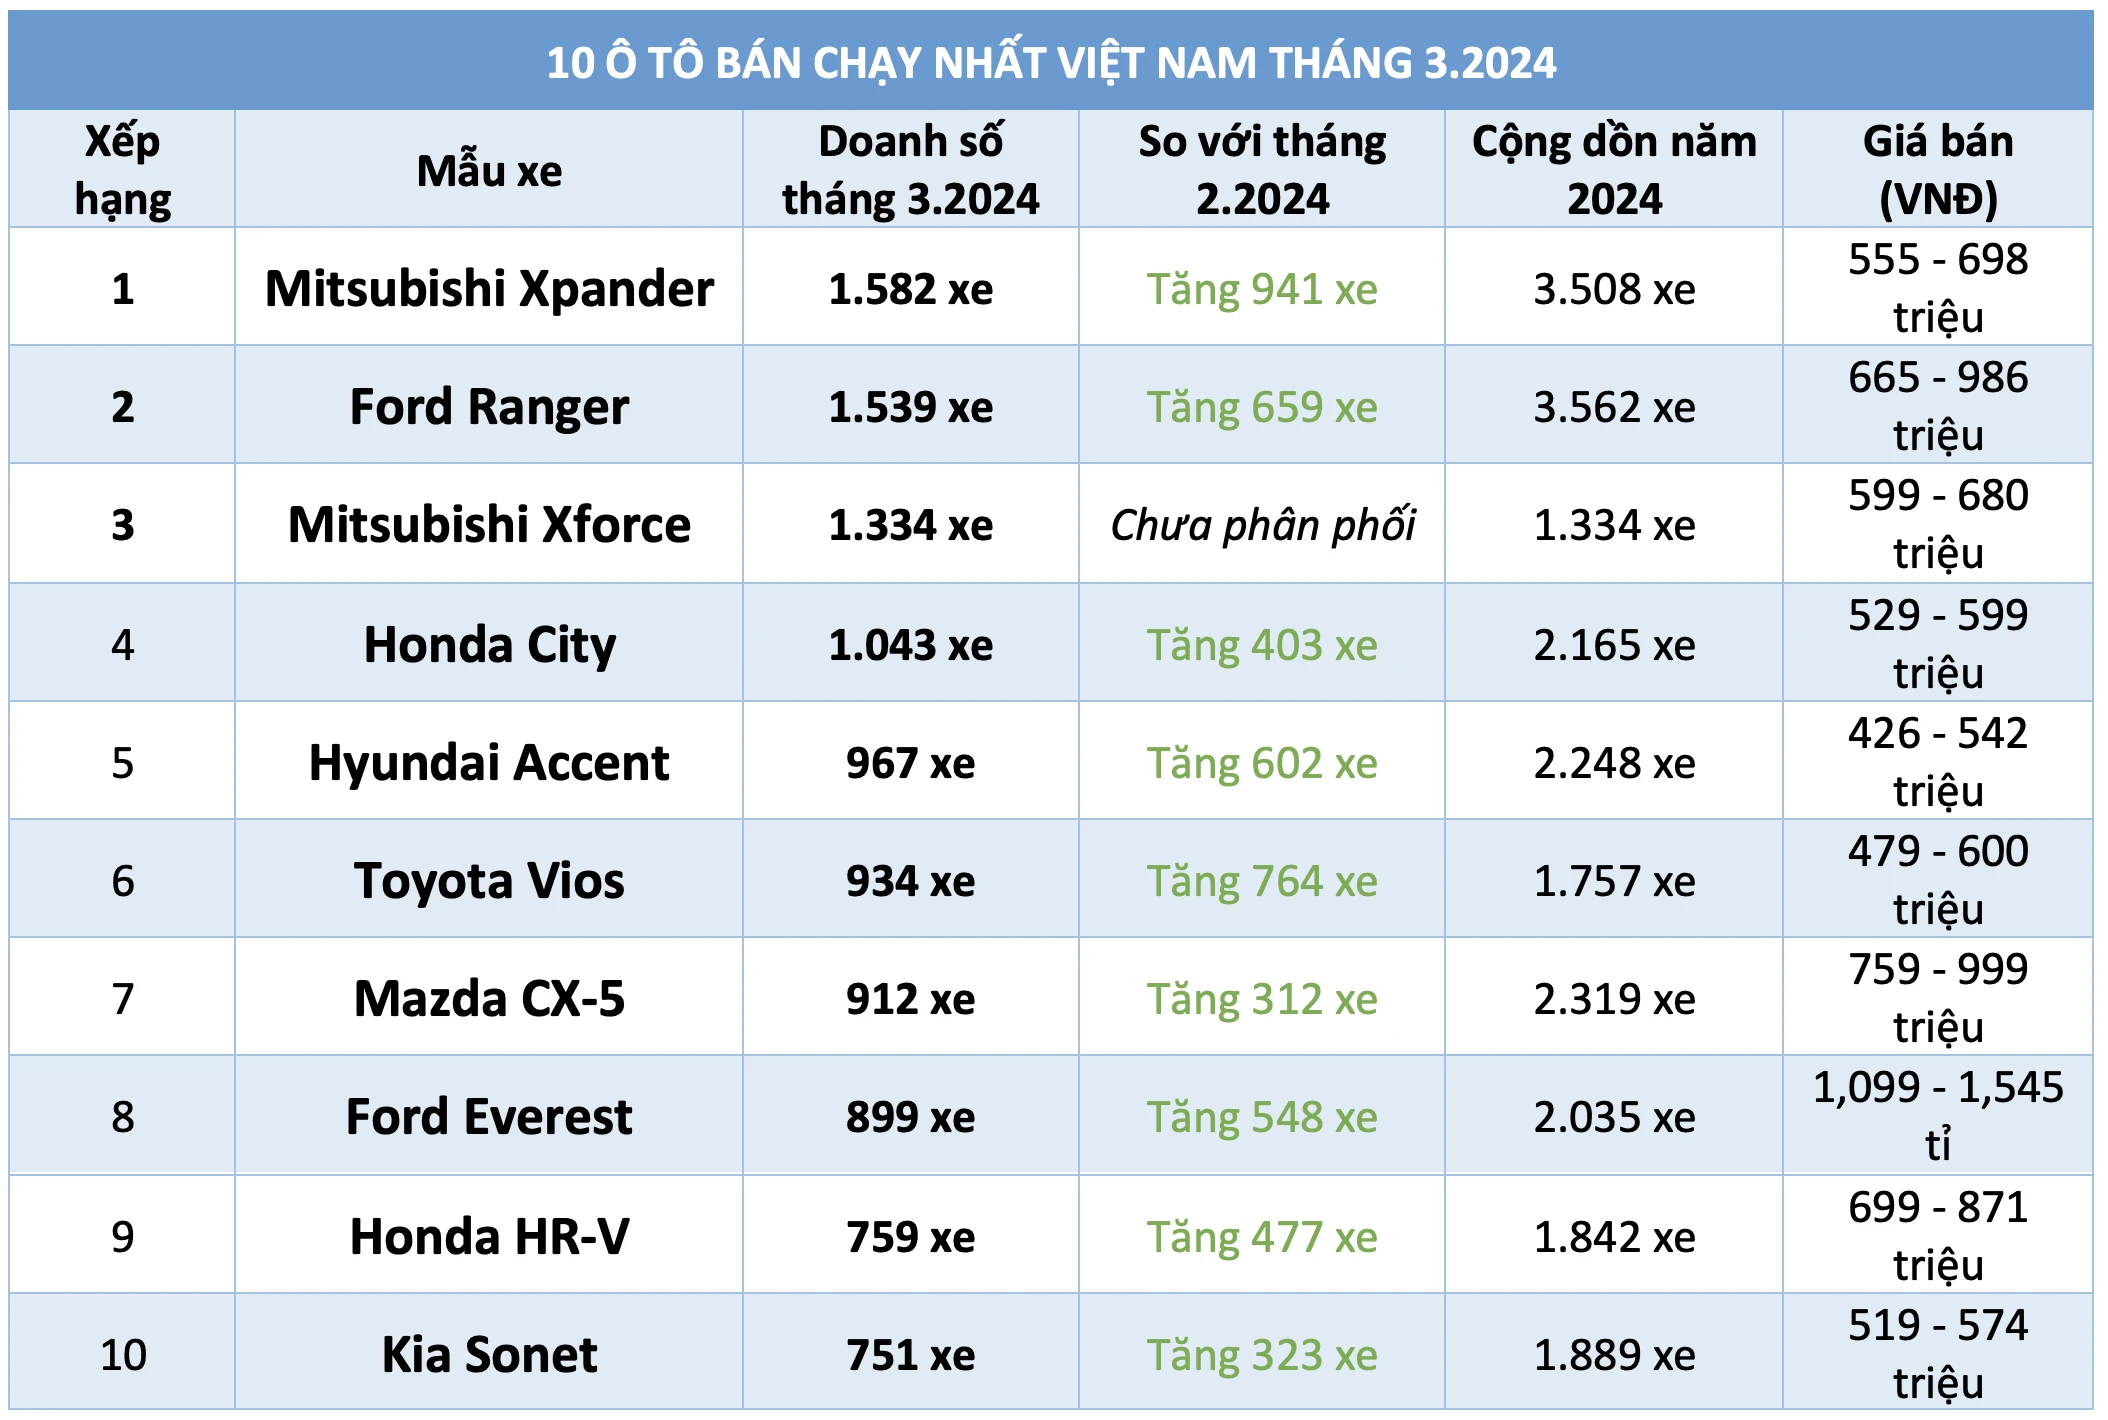 10 ô tô bán chạy nhất Việt Nam tháng 3.2024: Xpander dẫn đầu, Xforce góp mặt